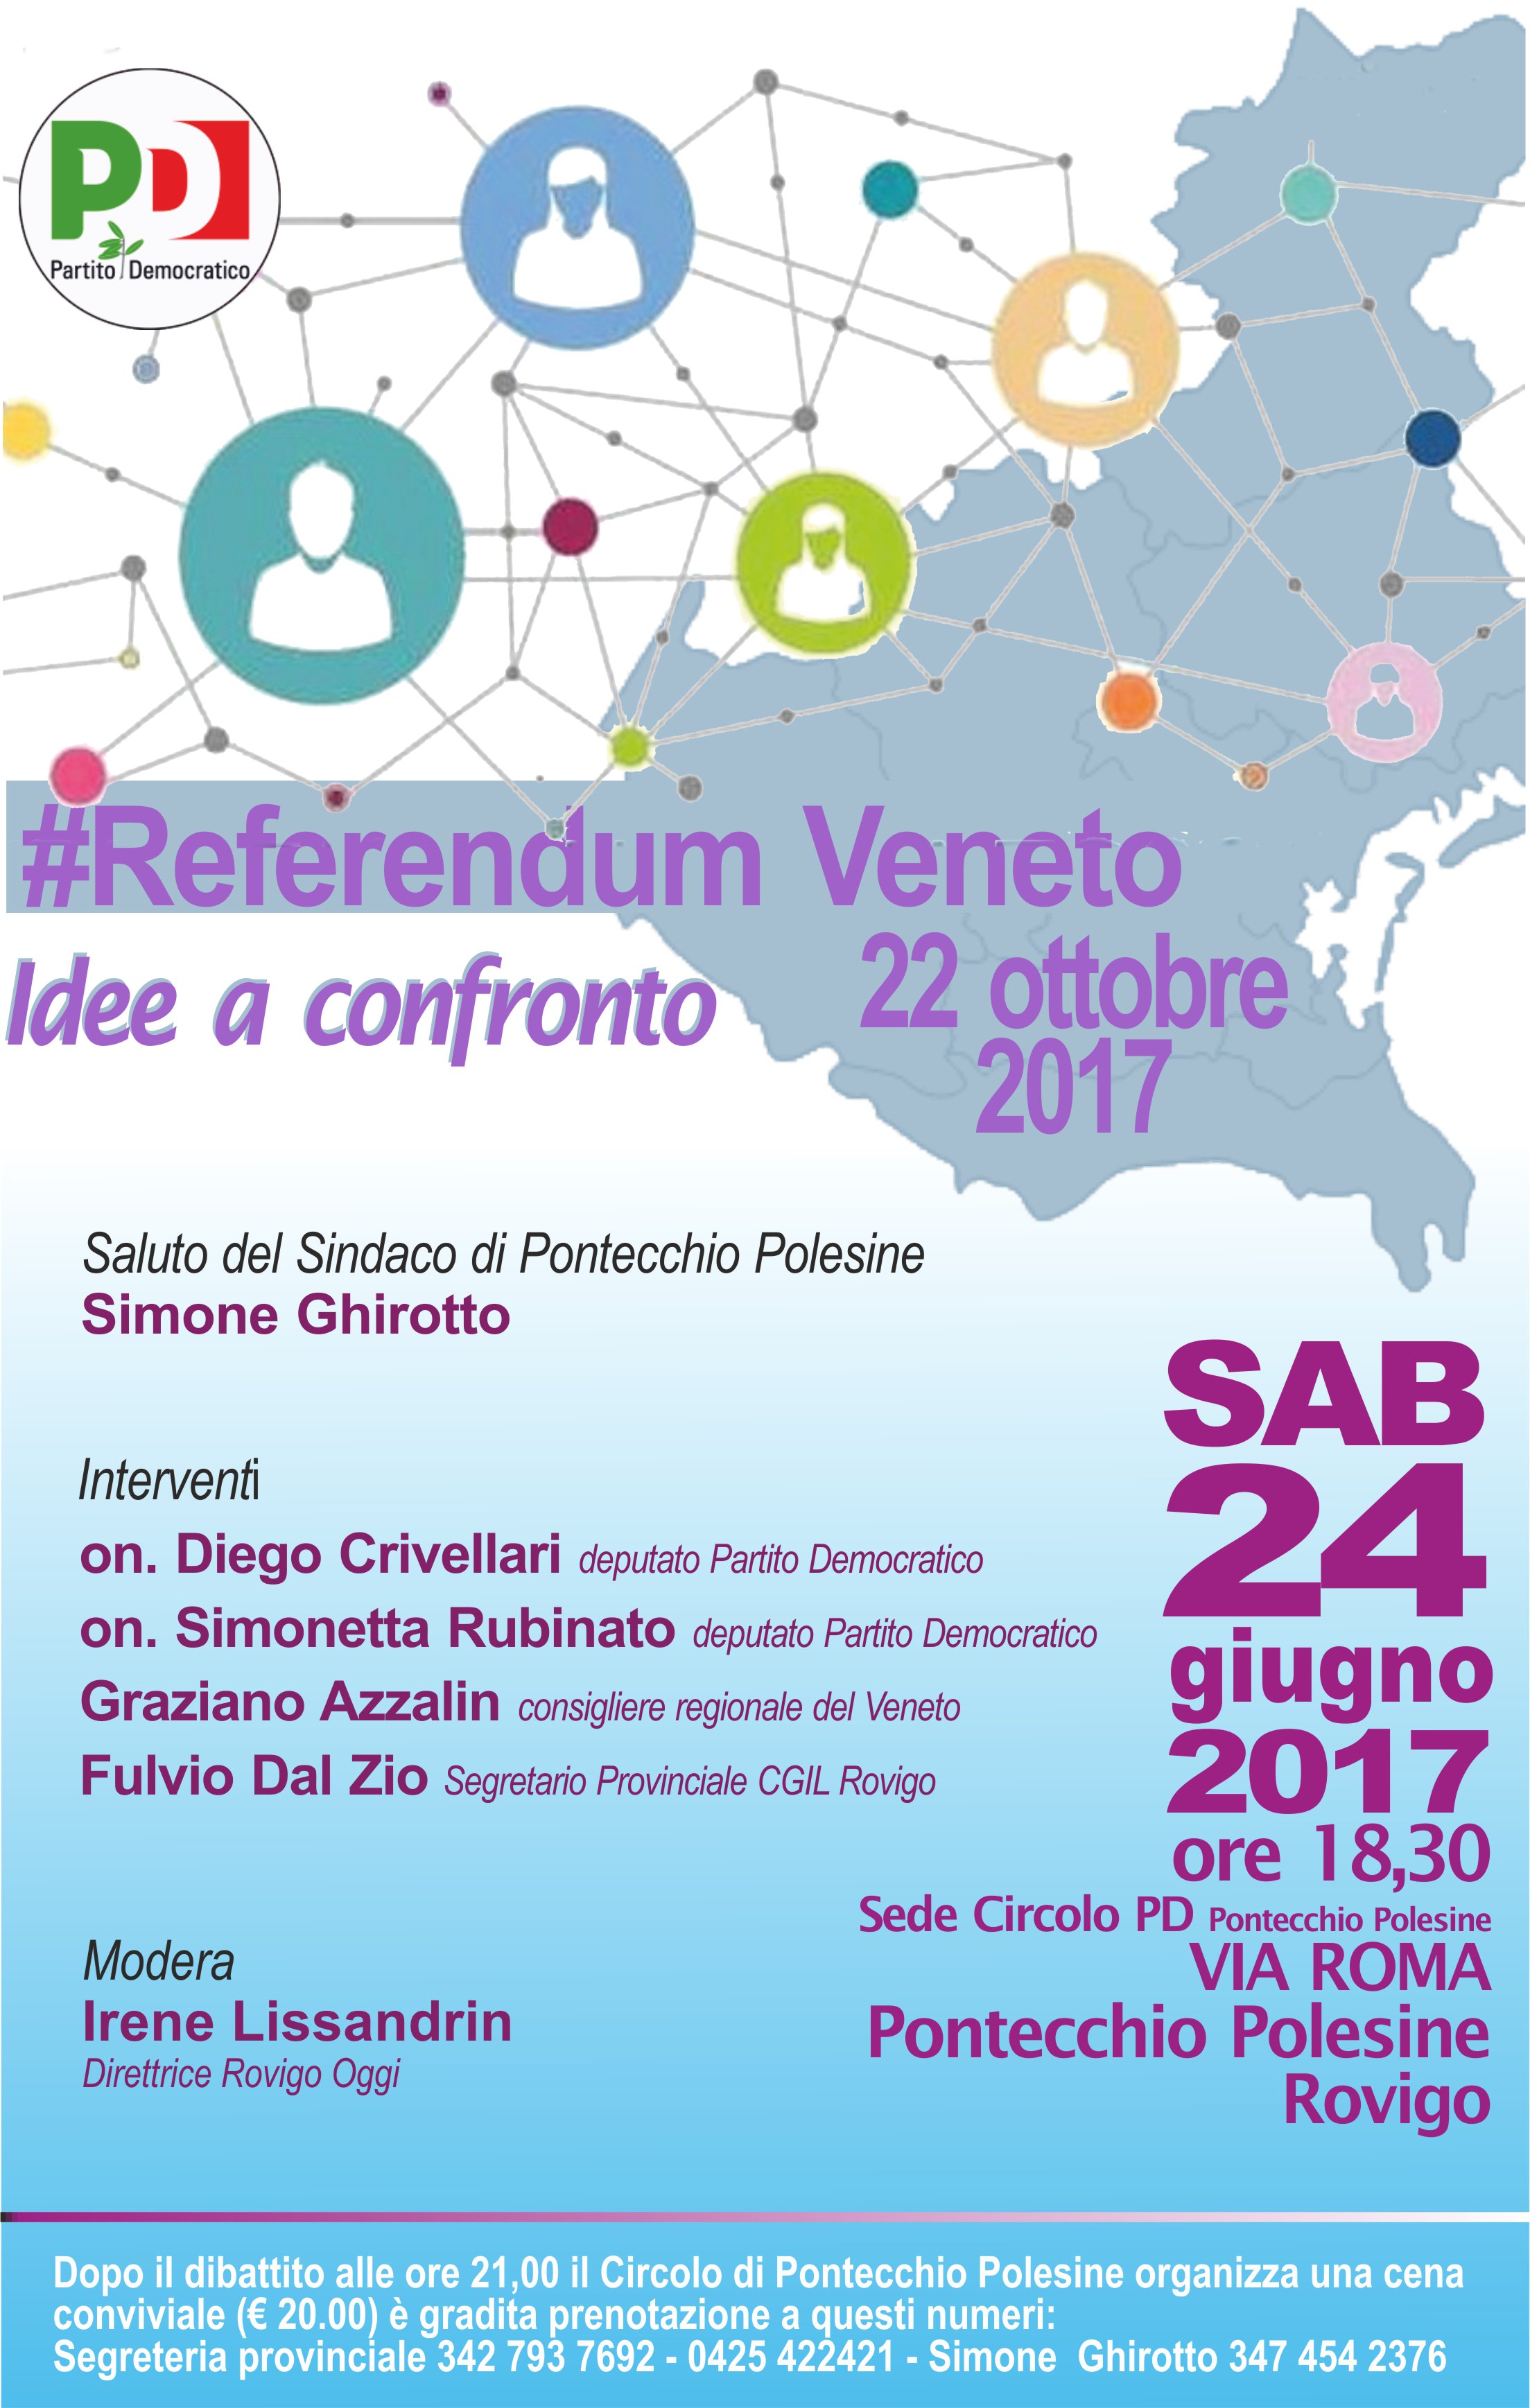 Al momento stai visualizzando Momento politico-conviviale-sabato 24 giugno a Pontecchio Polesine